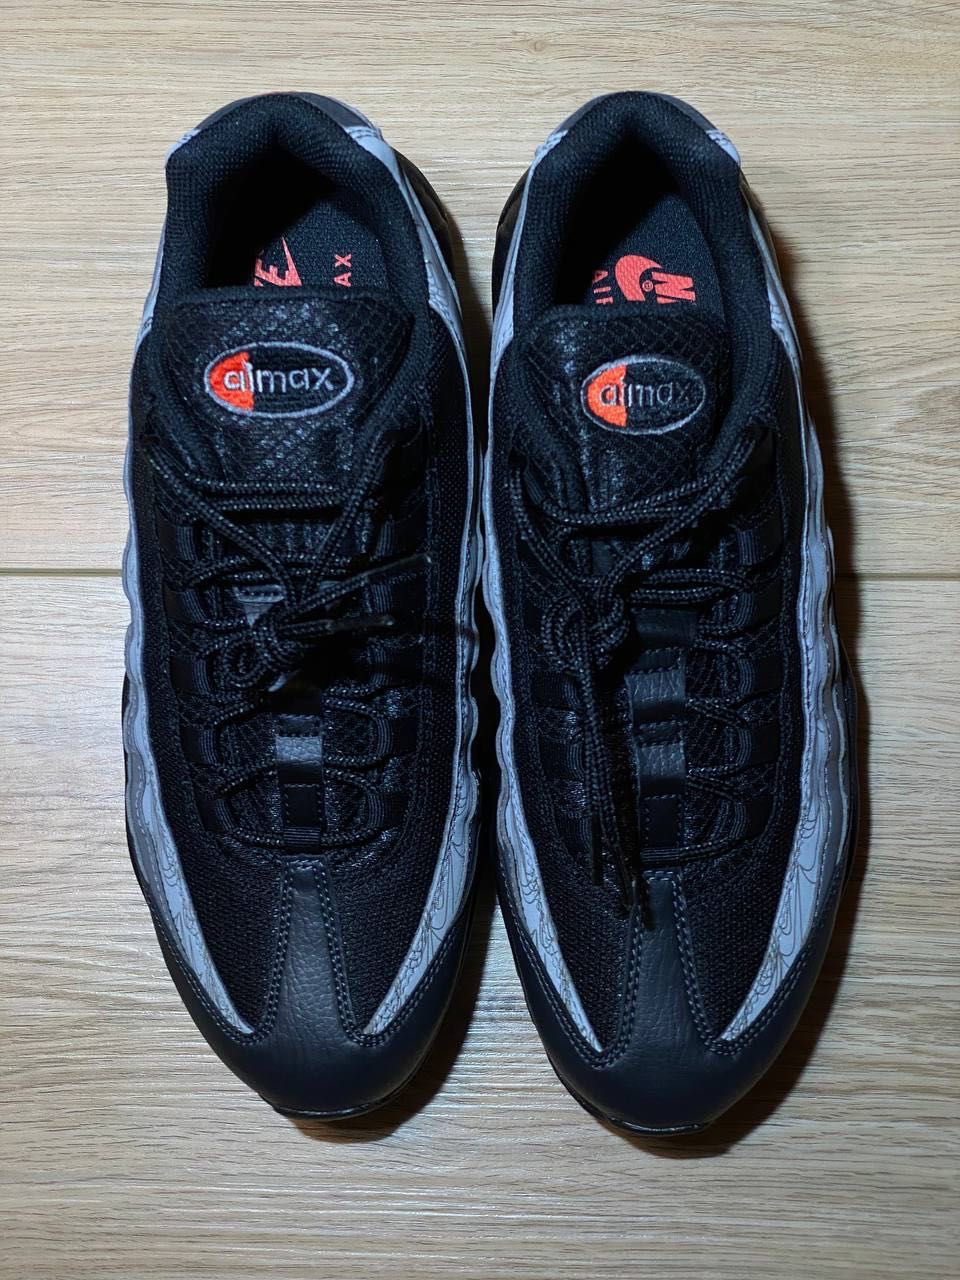 Nike Air Max 95 Black/Grey Original